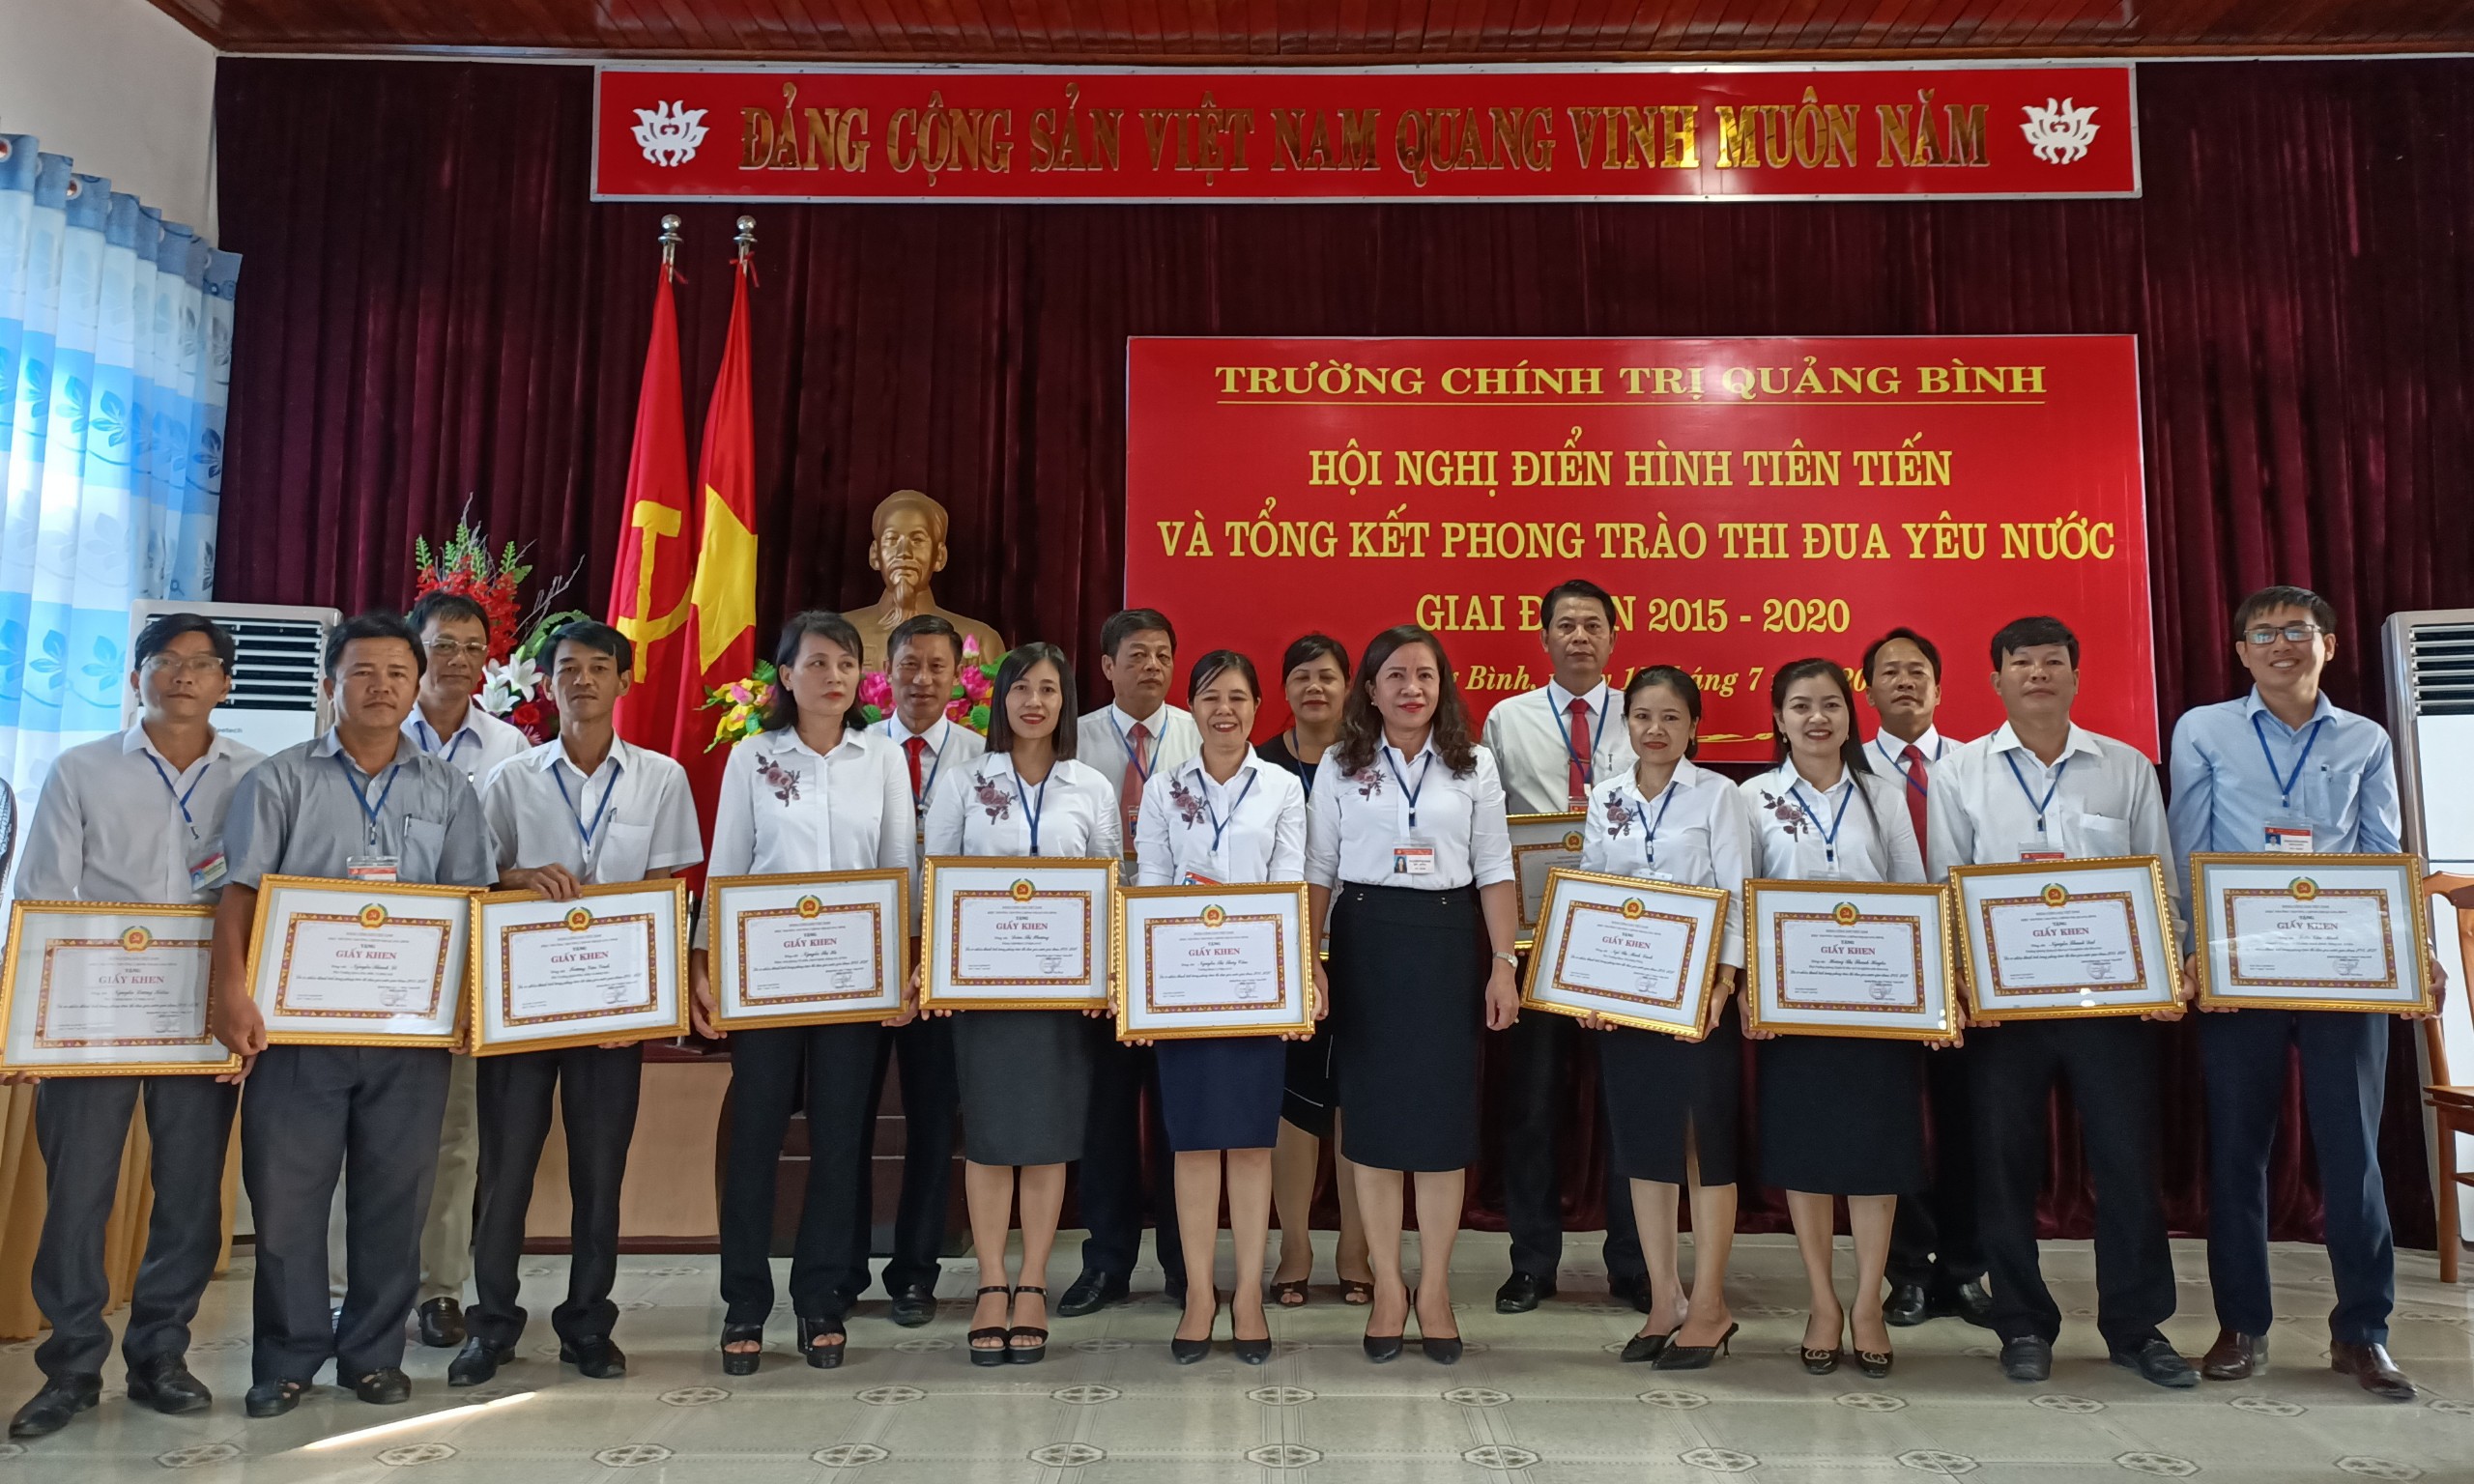 Đồng chí Hiệu trưởng Trường Chính trị tỉnh Nguyễn Thị Minh trao giấy khen cho các điển hình tiên tiến giai đoạn 2015-2020.